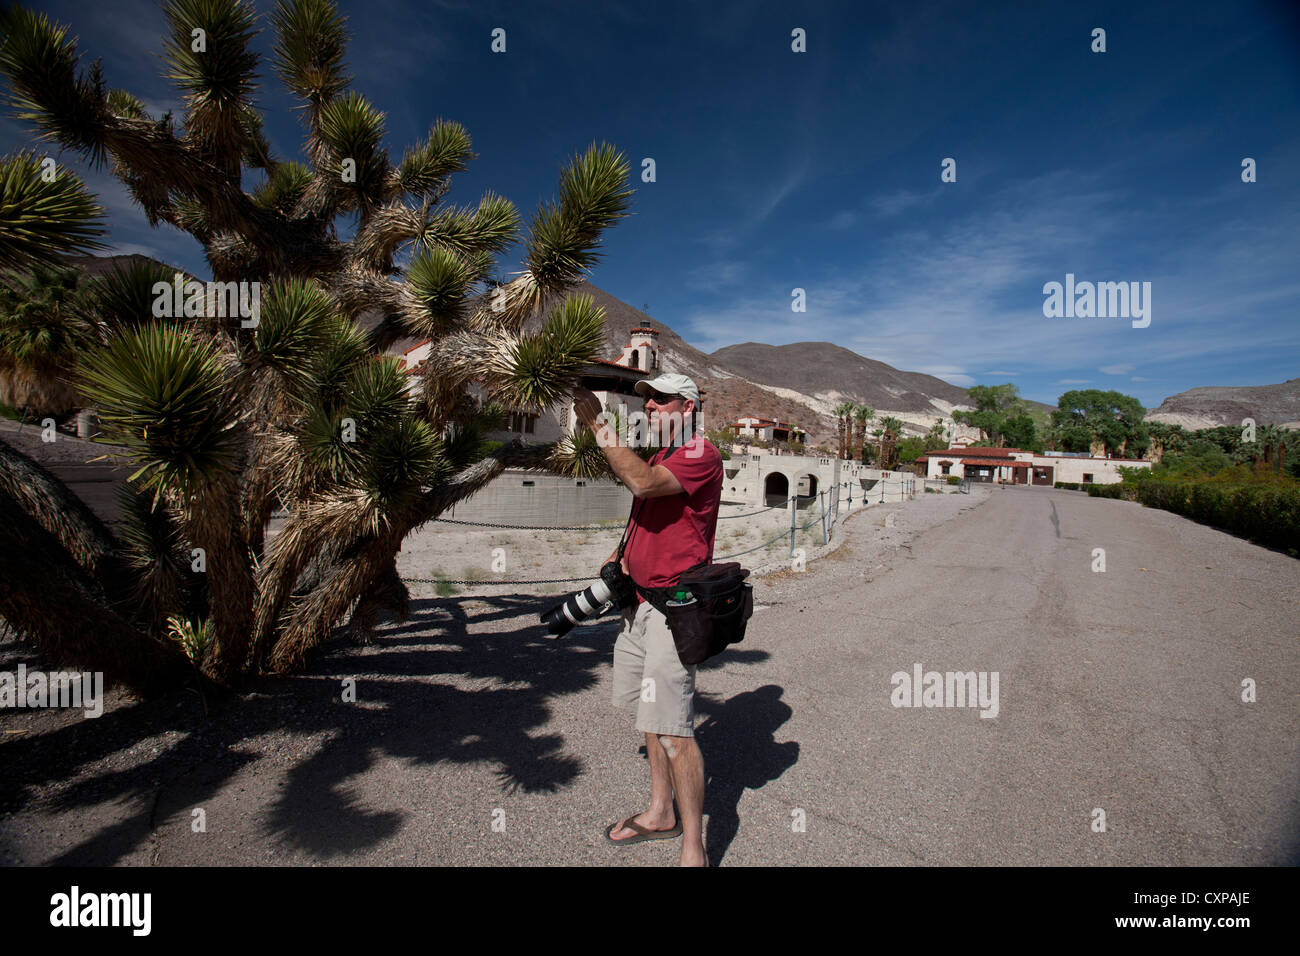 Erwachsenen männlichen Fotografen untersucht, Joshua Tree, Death Valley Nationalpark, Kalifornien, Vereinigte Staaten von Amerika Stockfoto